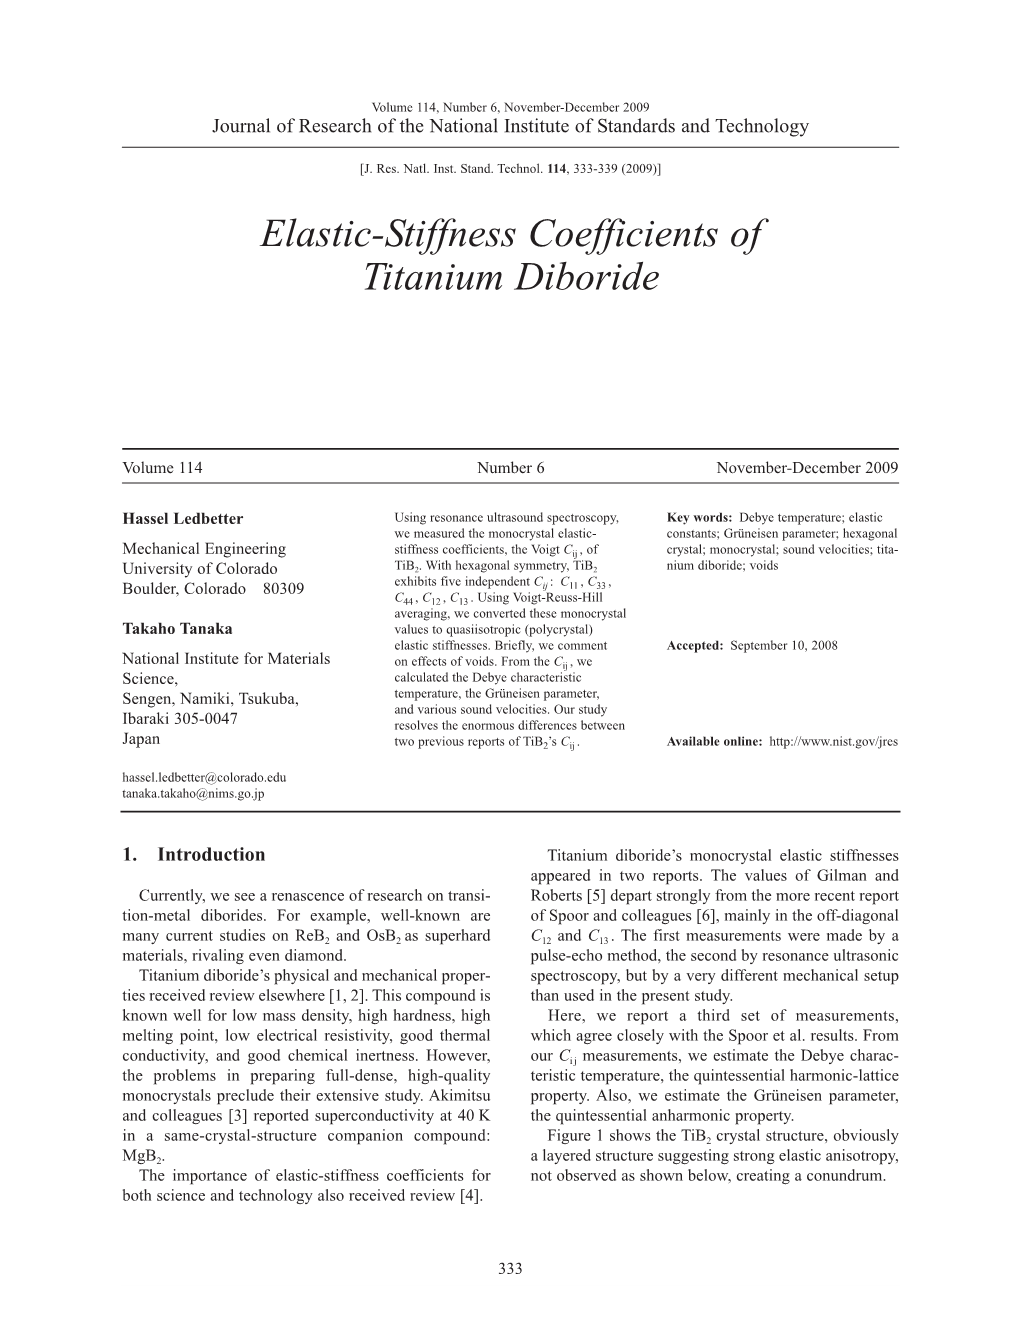 Elastic-Stiffness Coefficients of Titanium Diboride